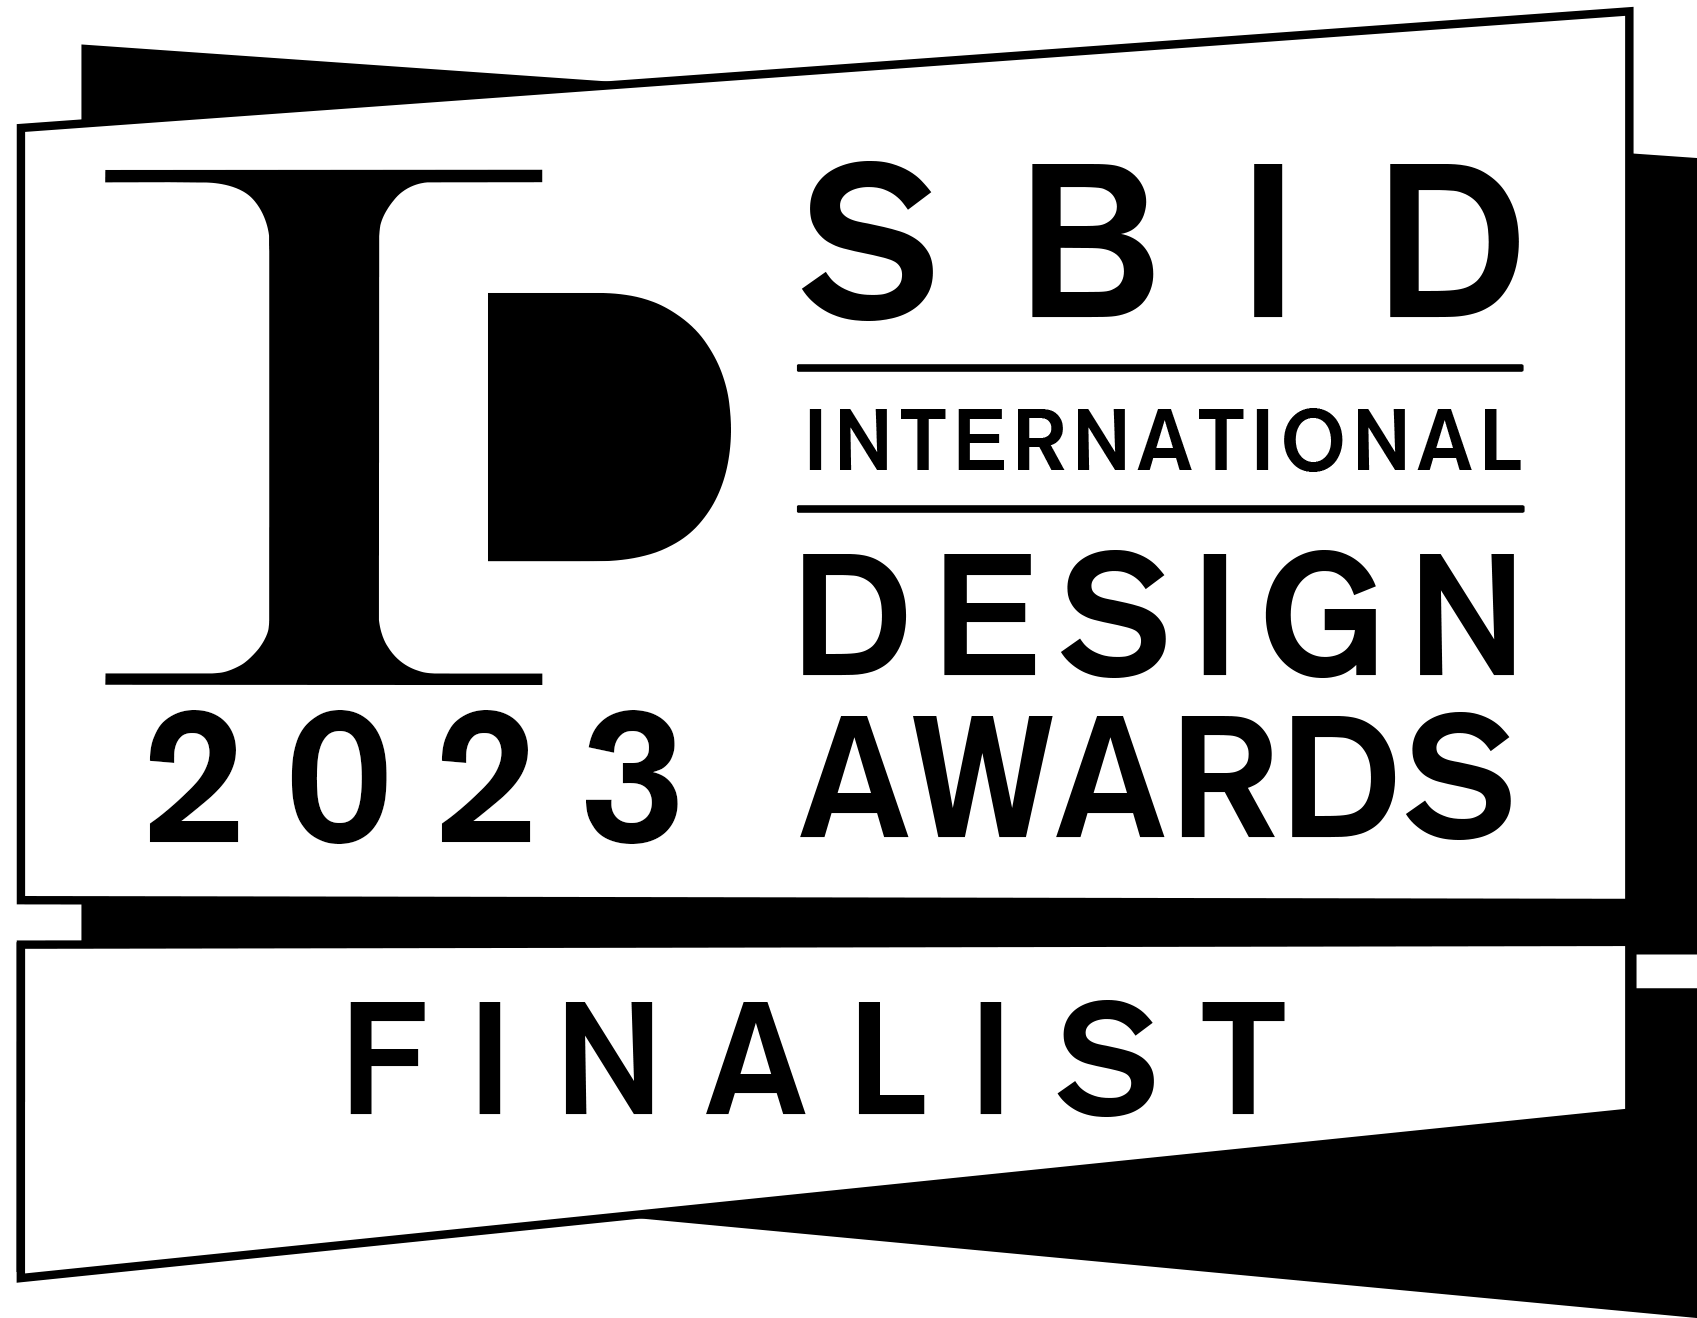 FINALIST-SBID-Awards-2023-Logo-Landscape_BLACK.png